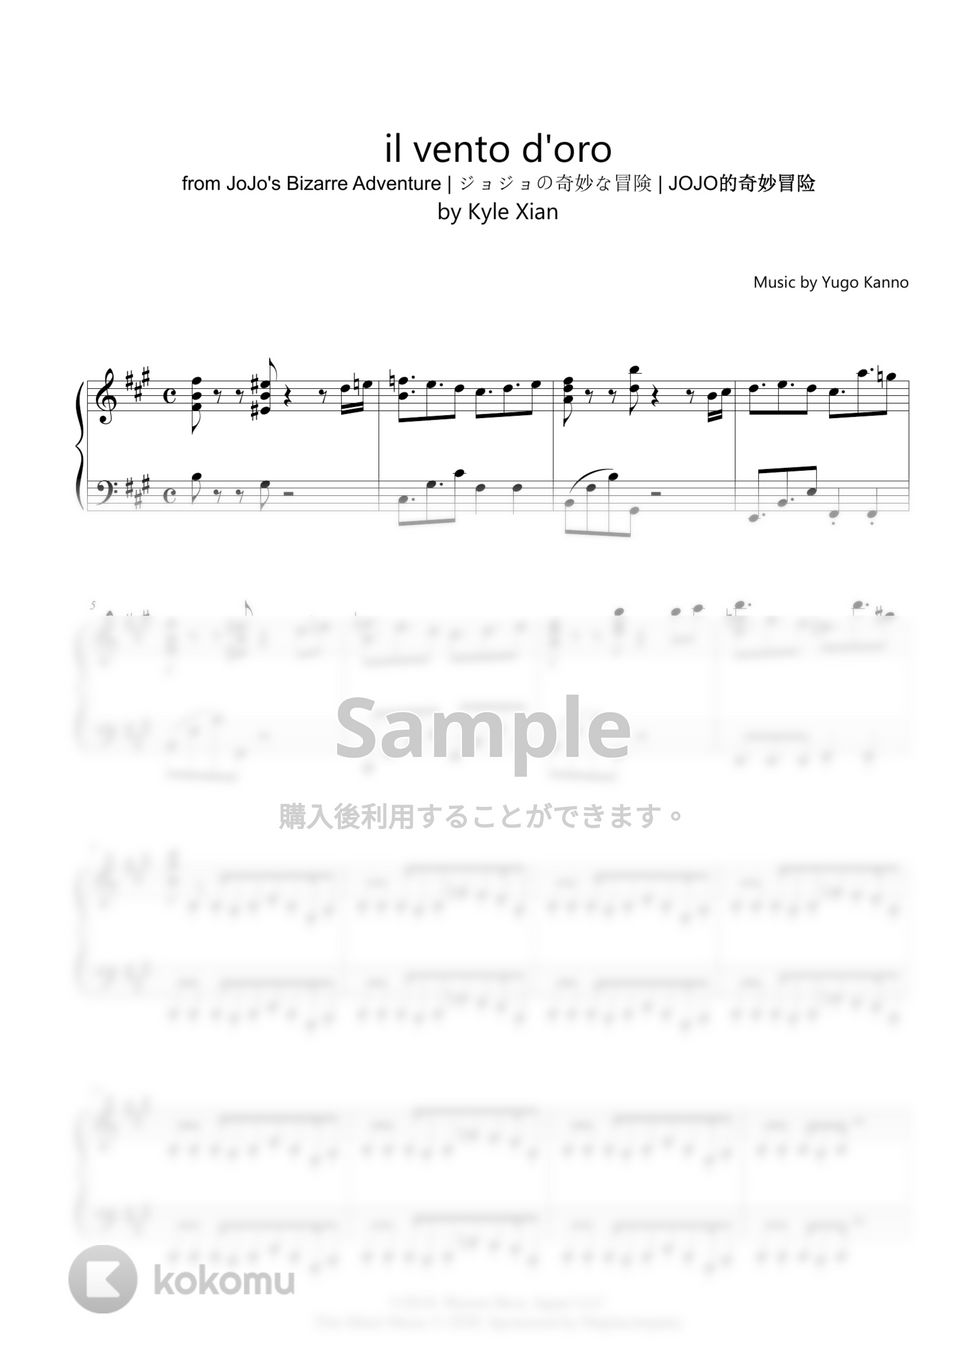 菅野祐悟 (Yugo Kanno) – ​il vento d'oro Lyrics